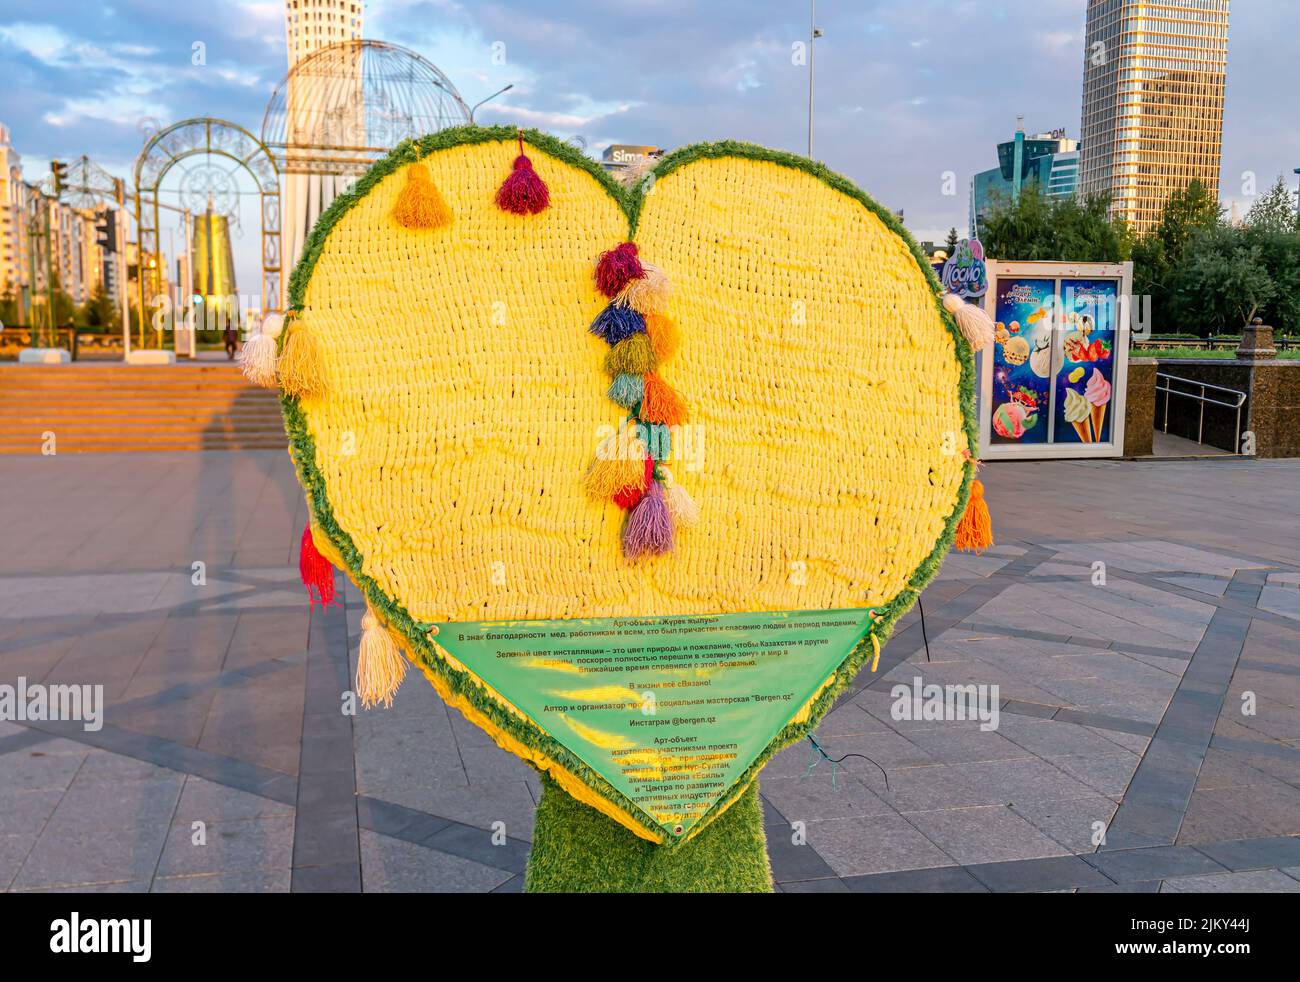 Objeto de arte Zhurek Zheluy en forma de corazón que simboliza la transición a la ciudad verde de Nur-Sultan, encargada por el gobierno de la ciudad. Kazajstán Foto de stock